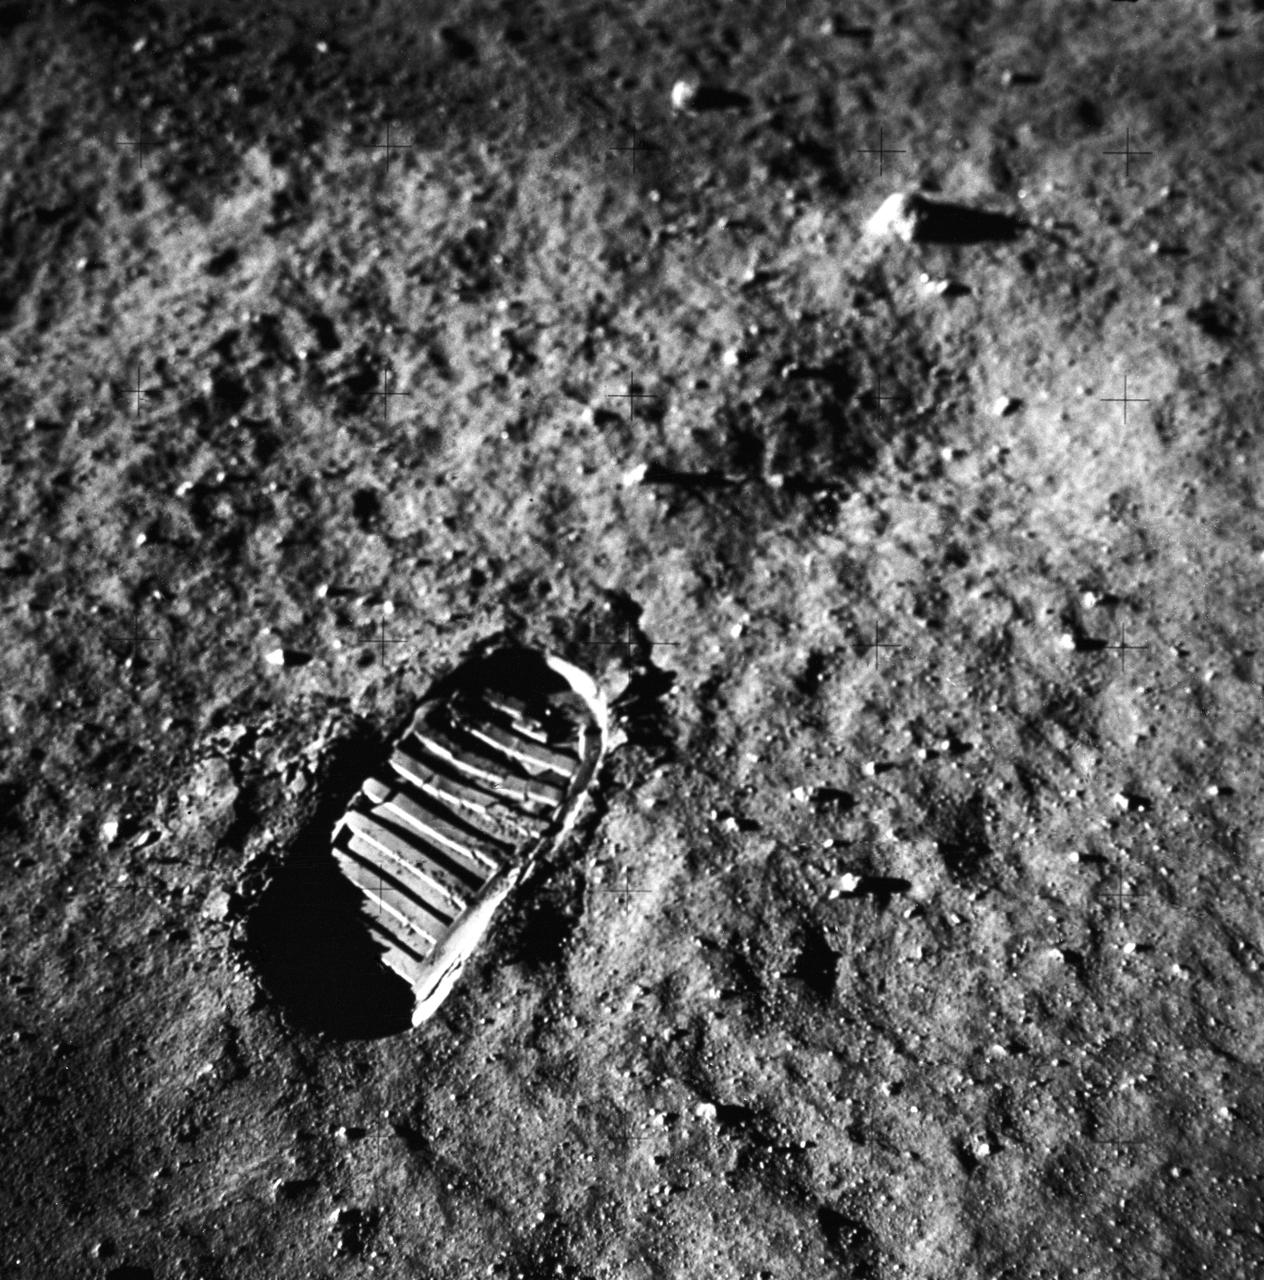 Saturn Apollo mission footprint on moon's surface